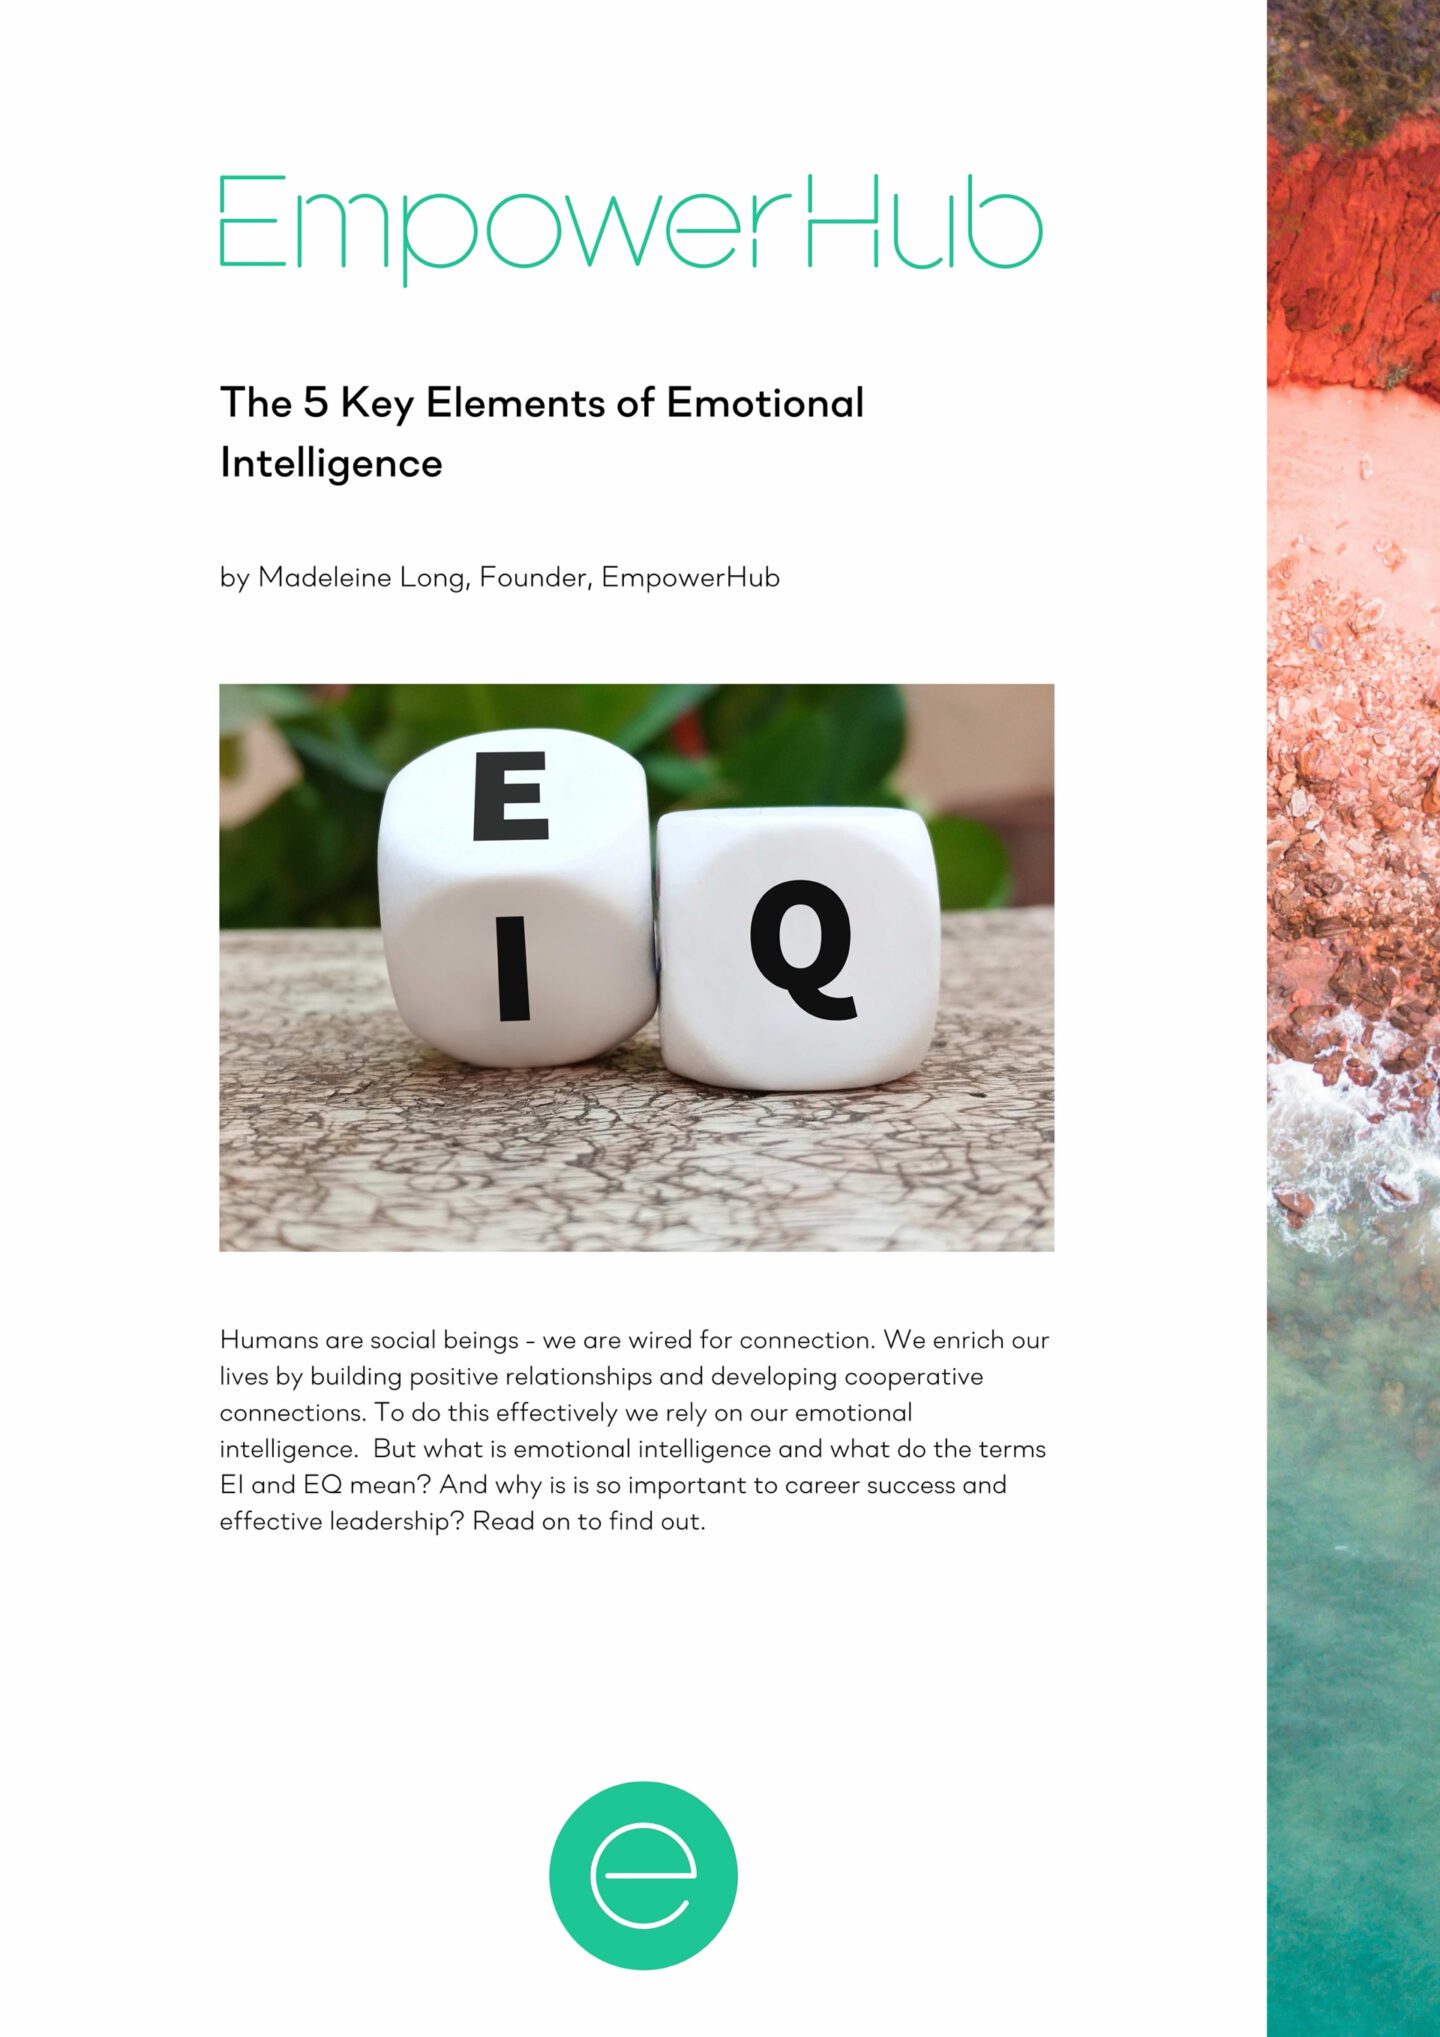 The 5 Key Elements of Emotional Intelligence